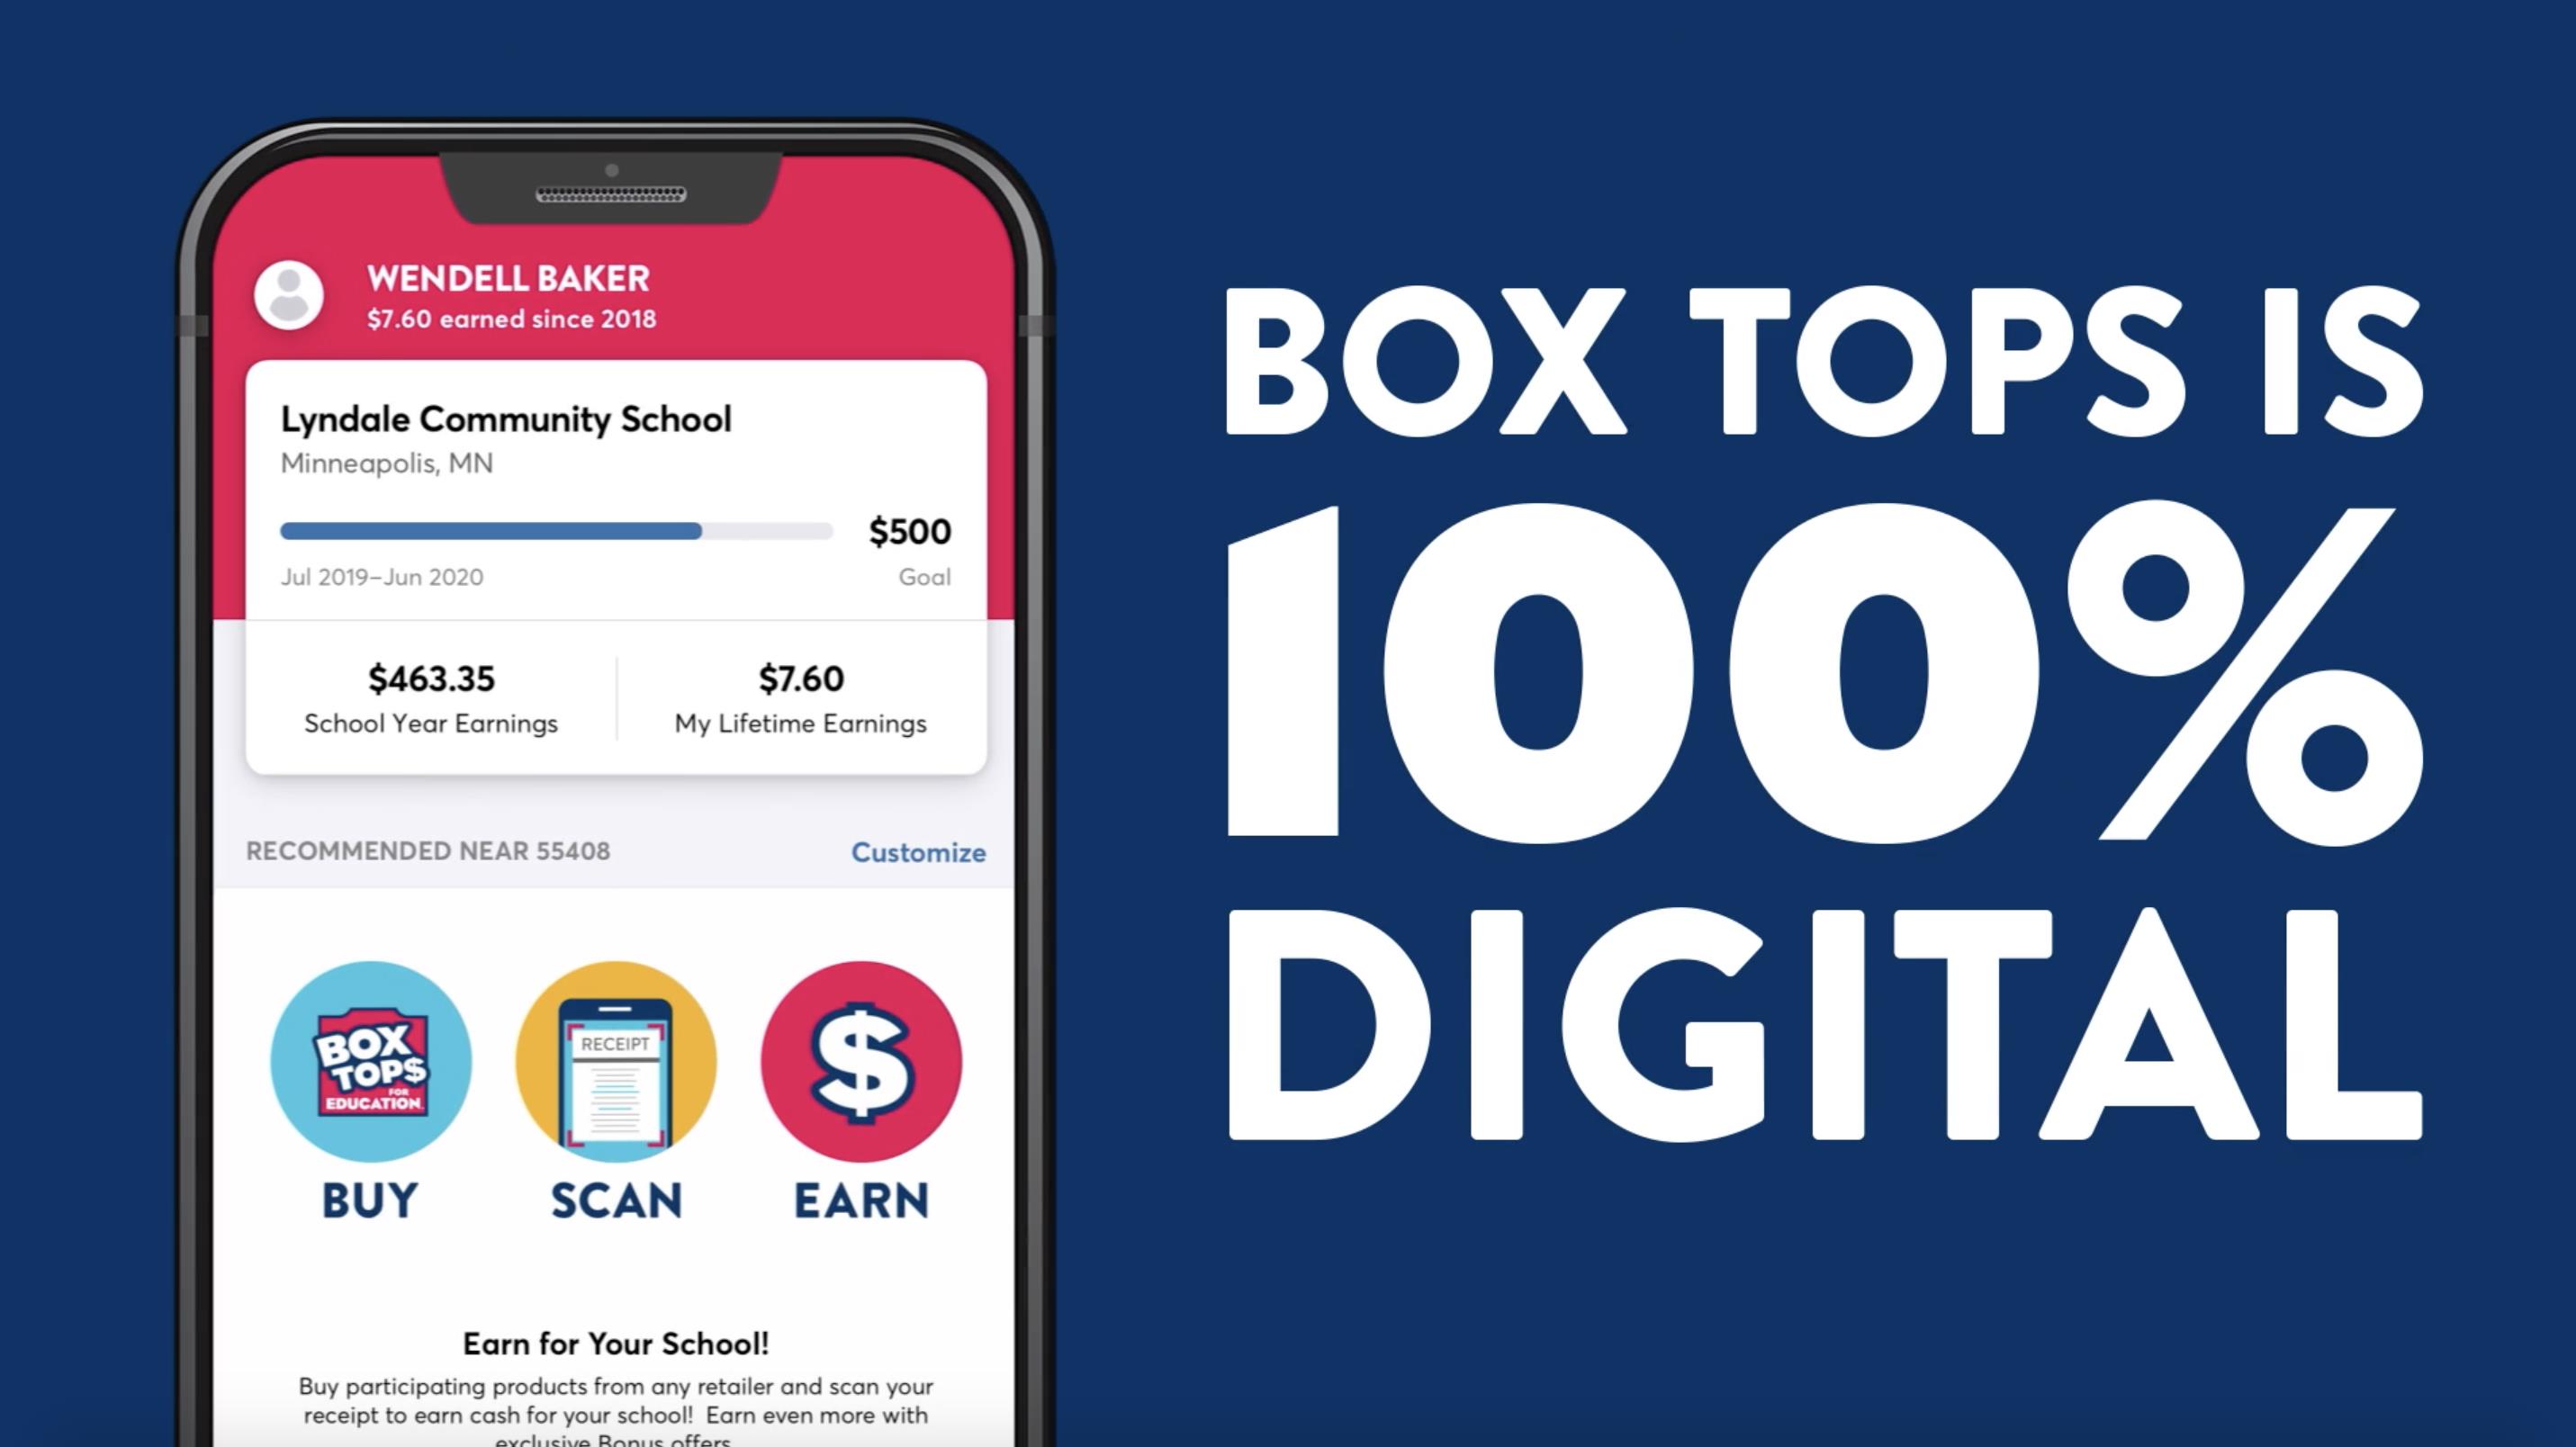 General Mills - Box Tops Digital Revamp